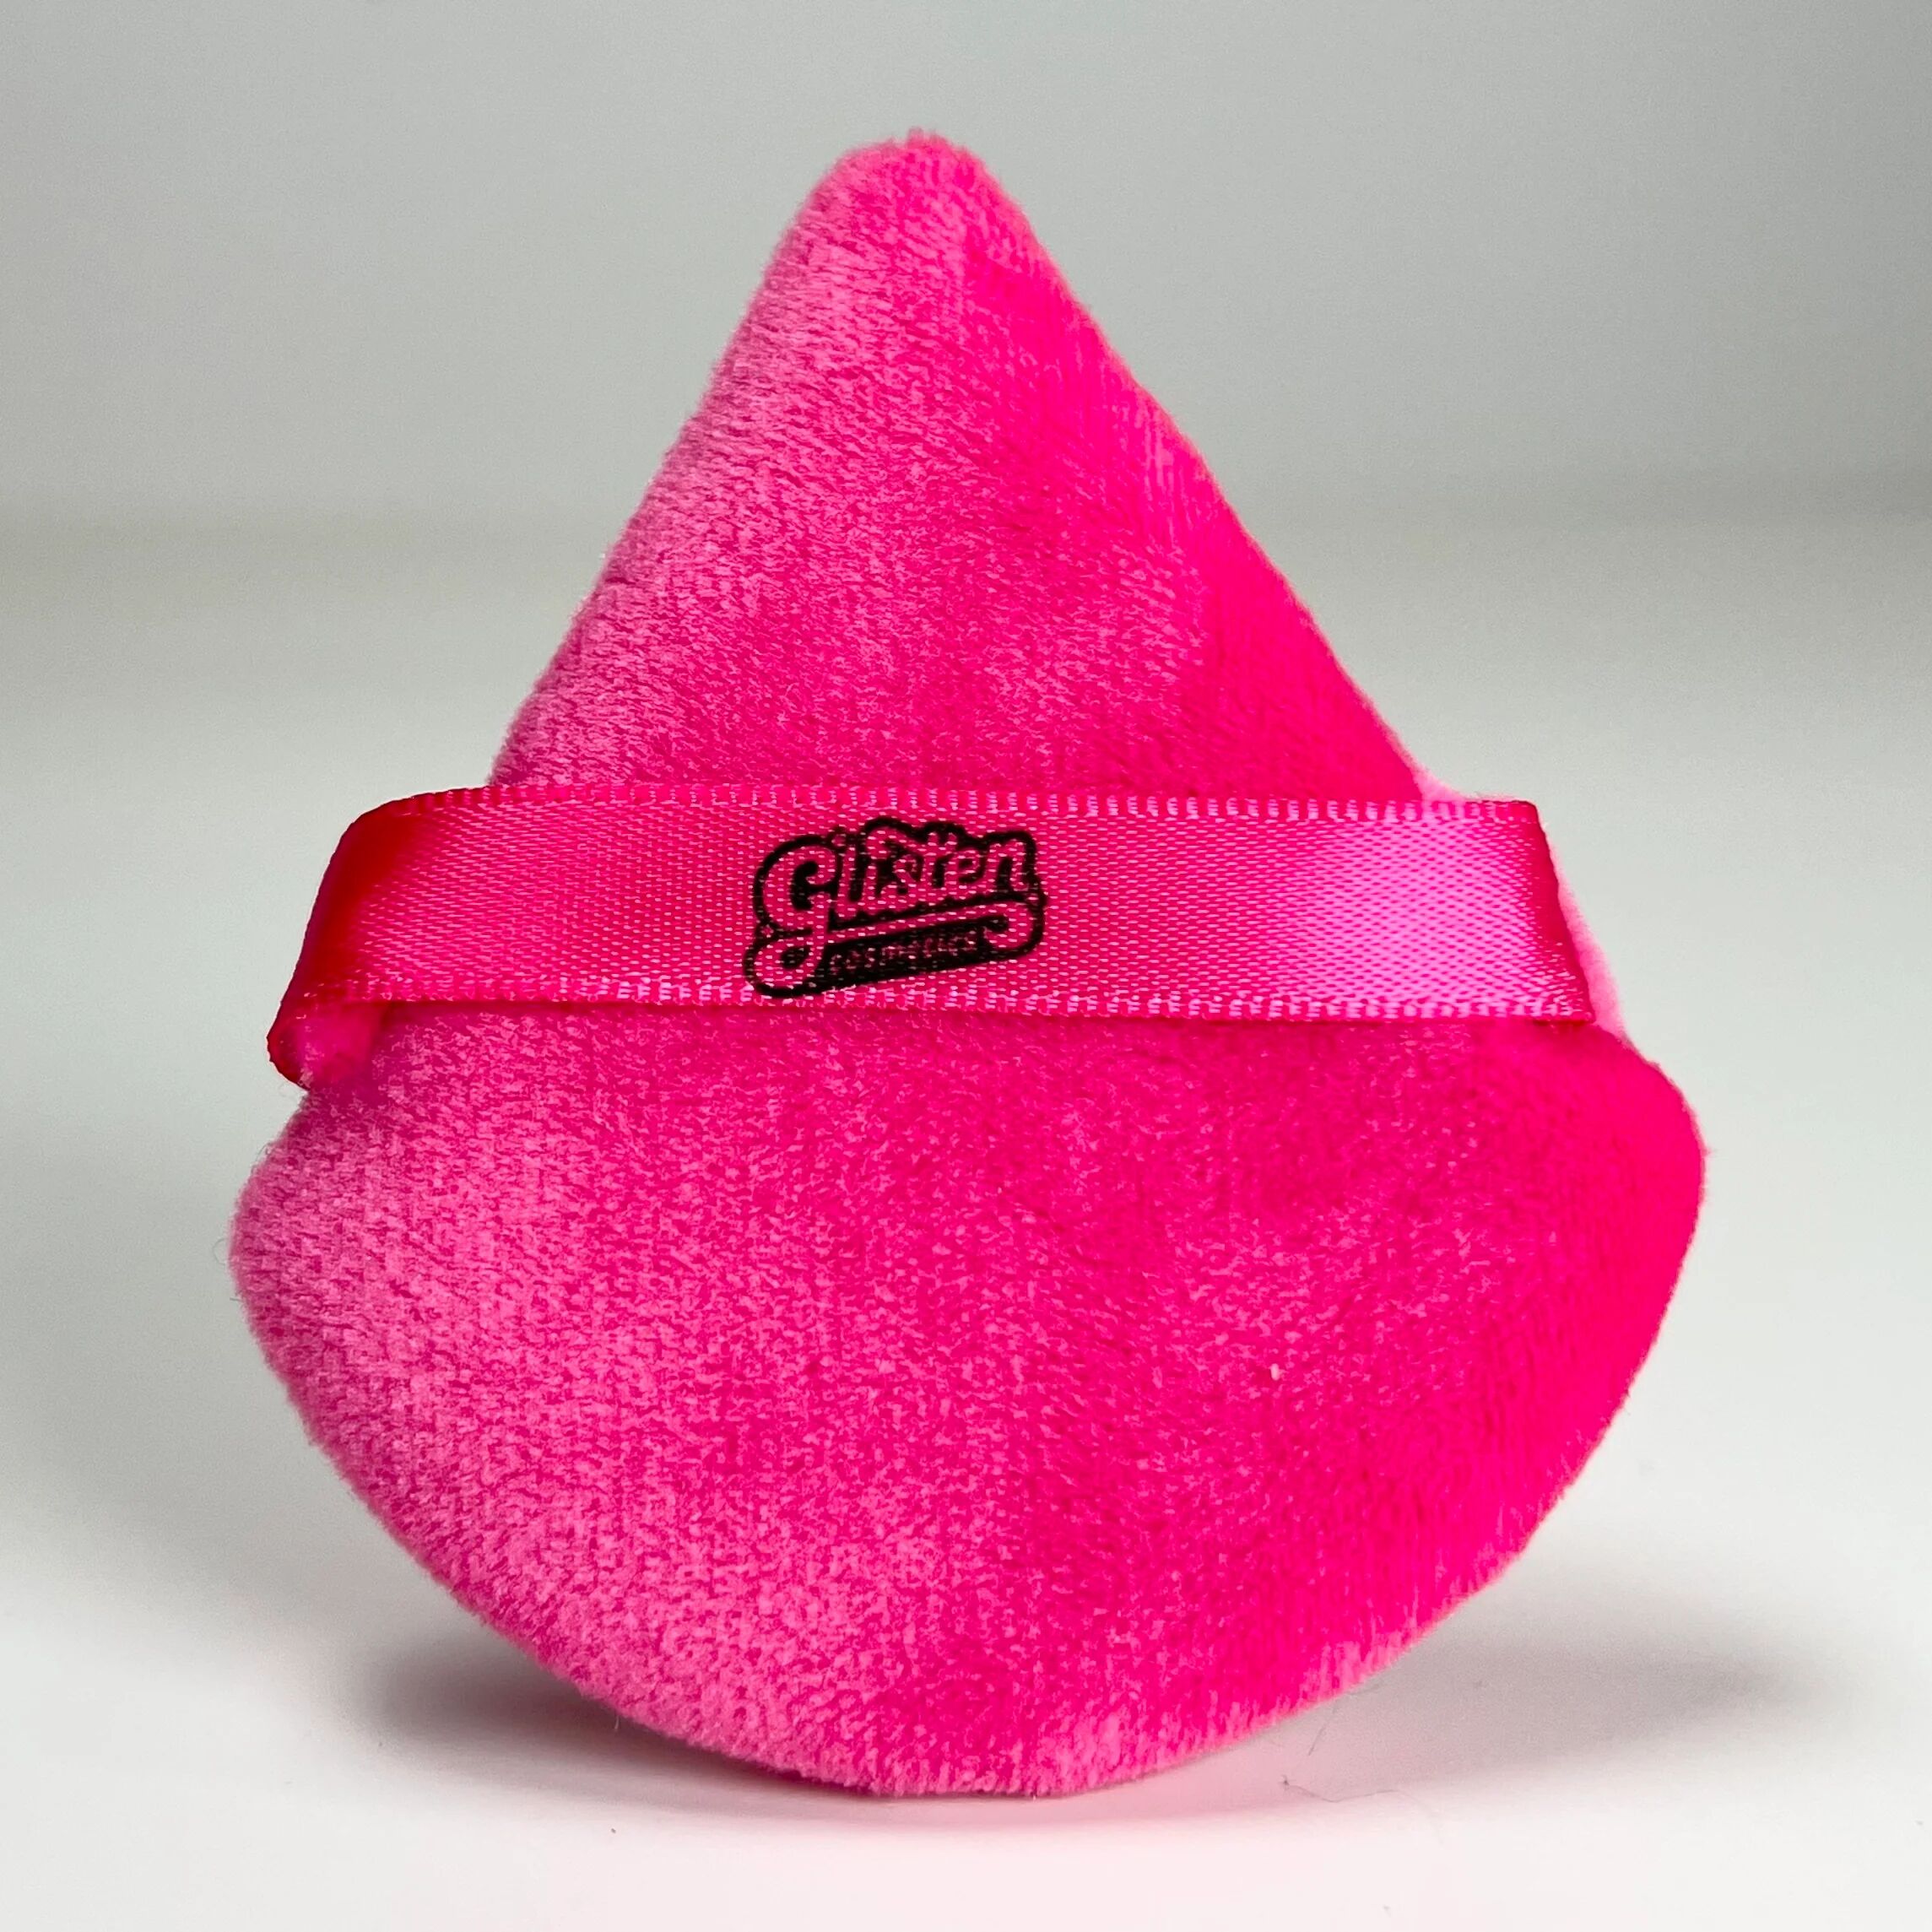 Glisten Cosmetics Pink Powder Puff